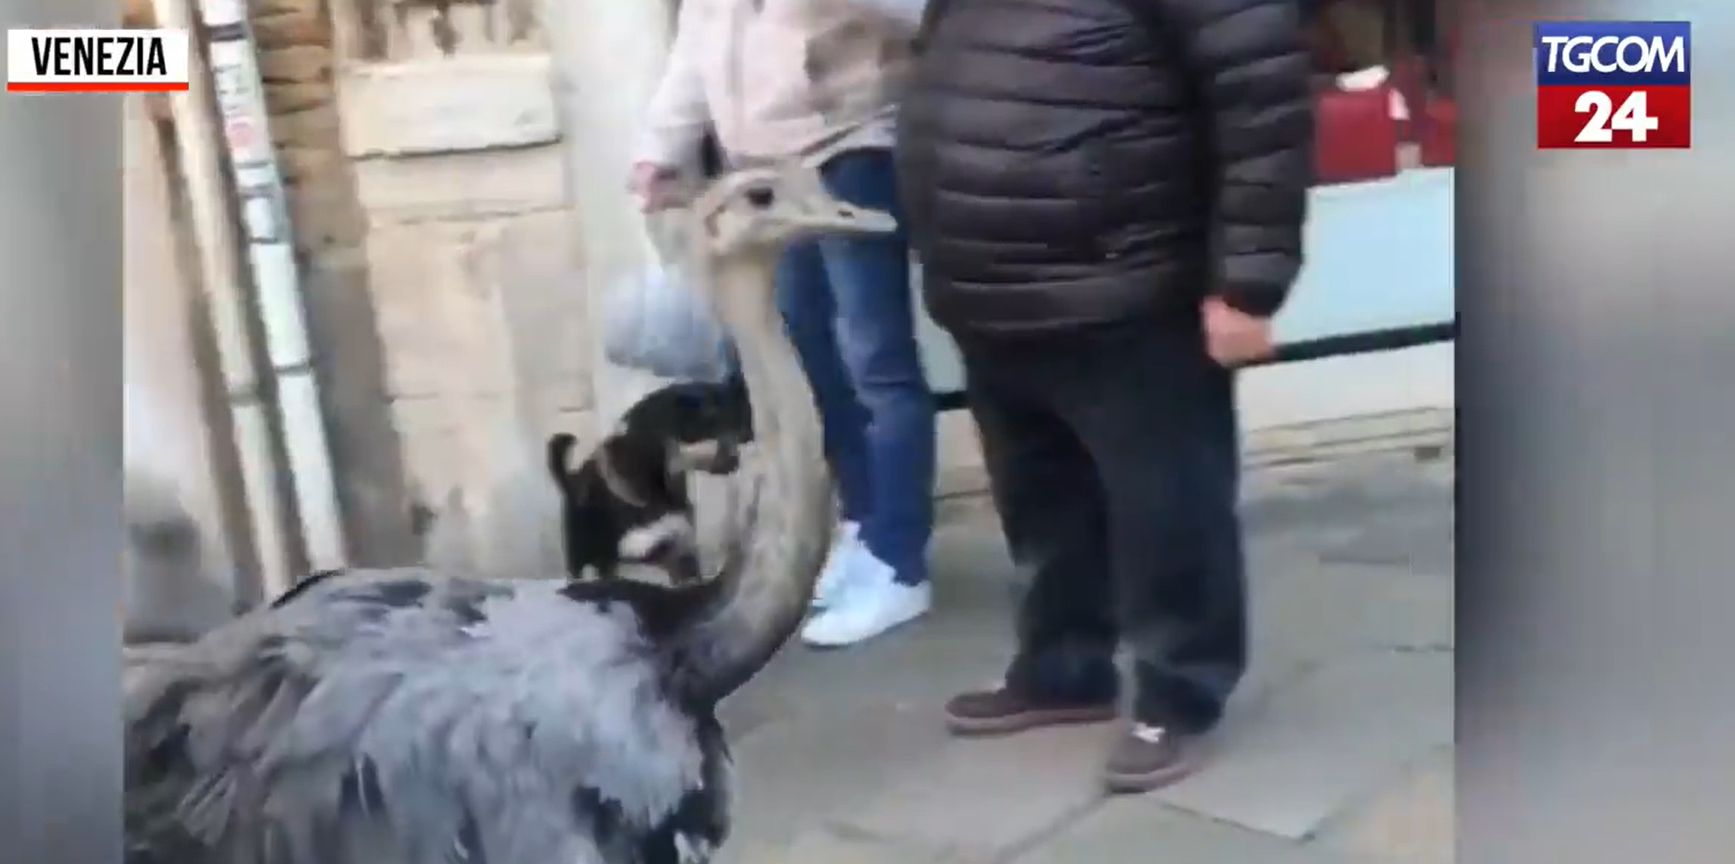 Emukat sétáltató turistákat bírságoltak Velencében